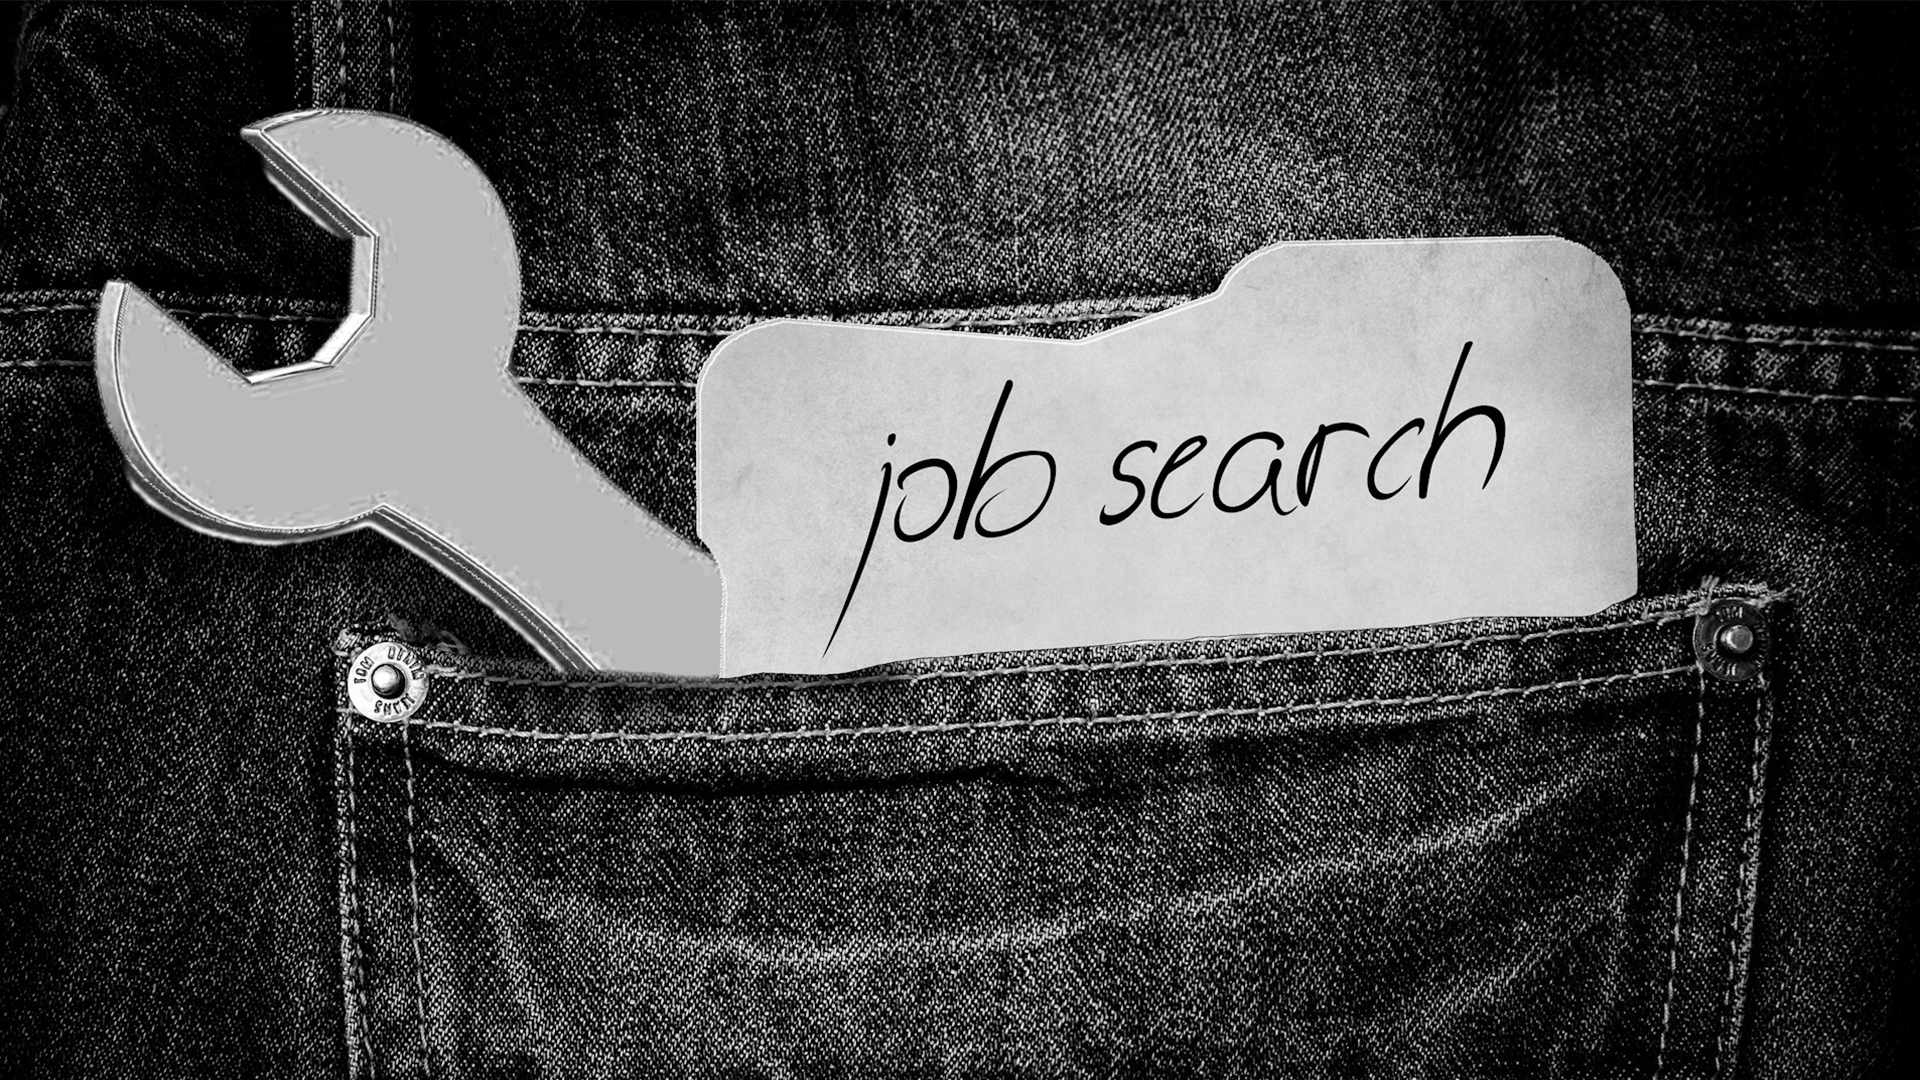 Hosentasche mit Zettel: "Job Search"